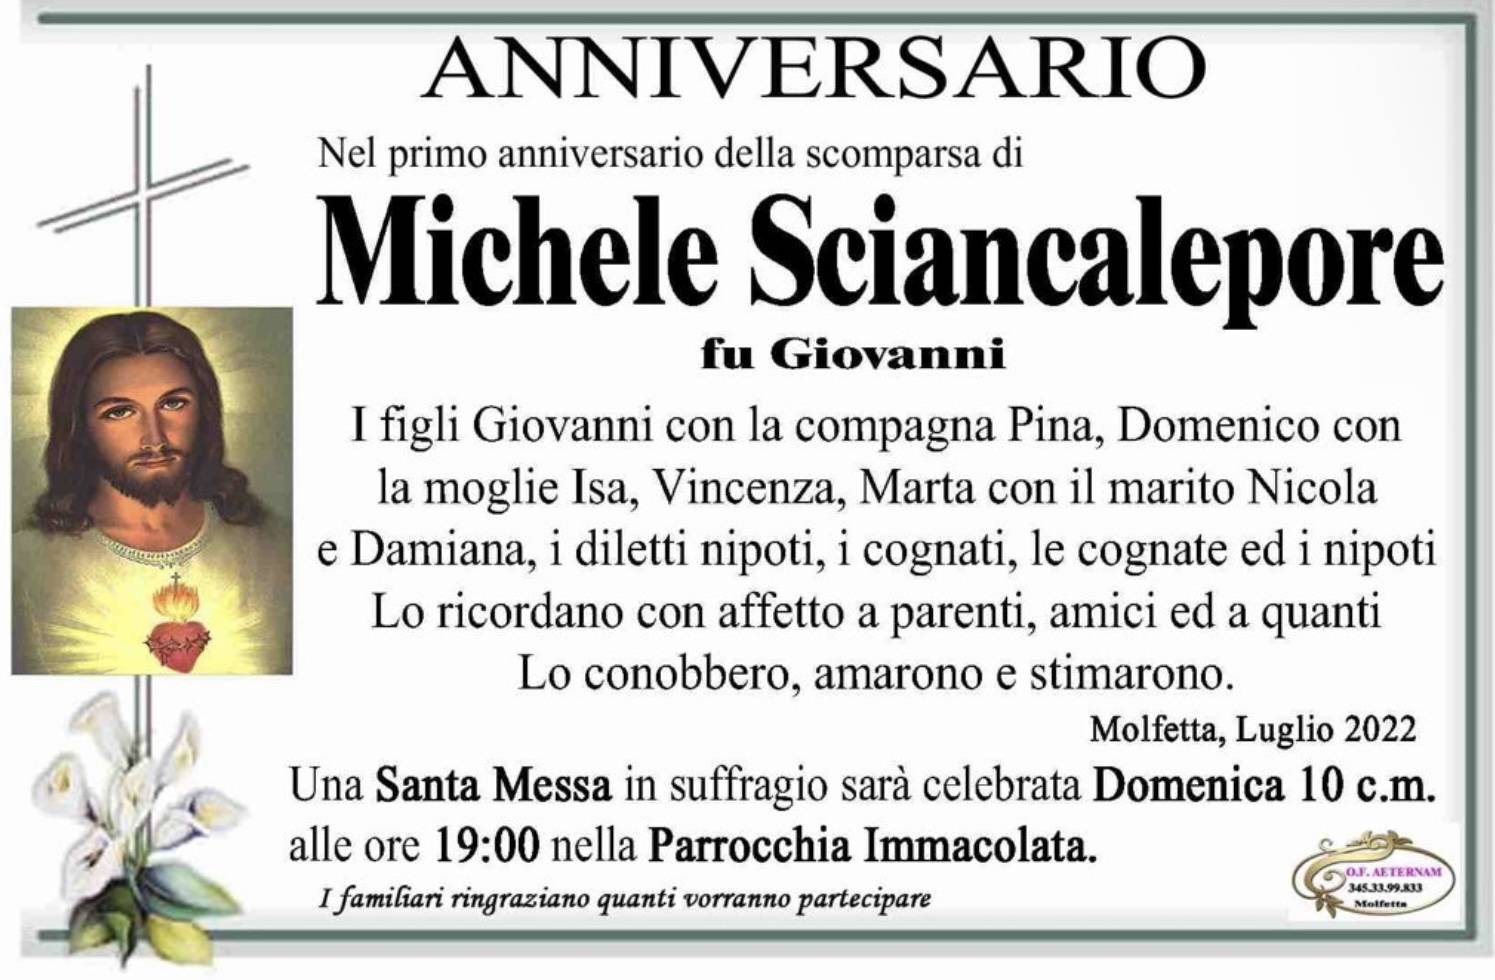 Michele Sciancalepore